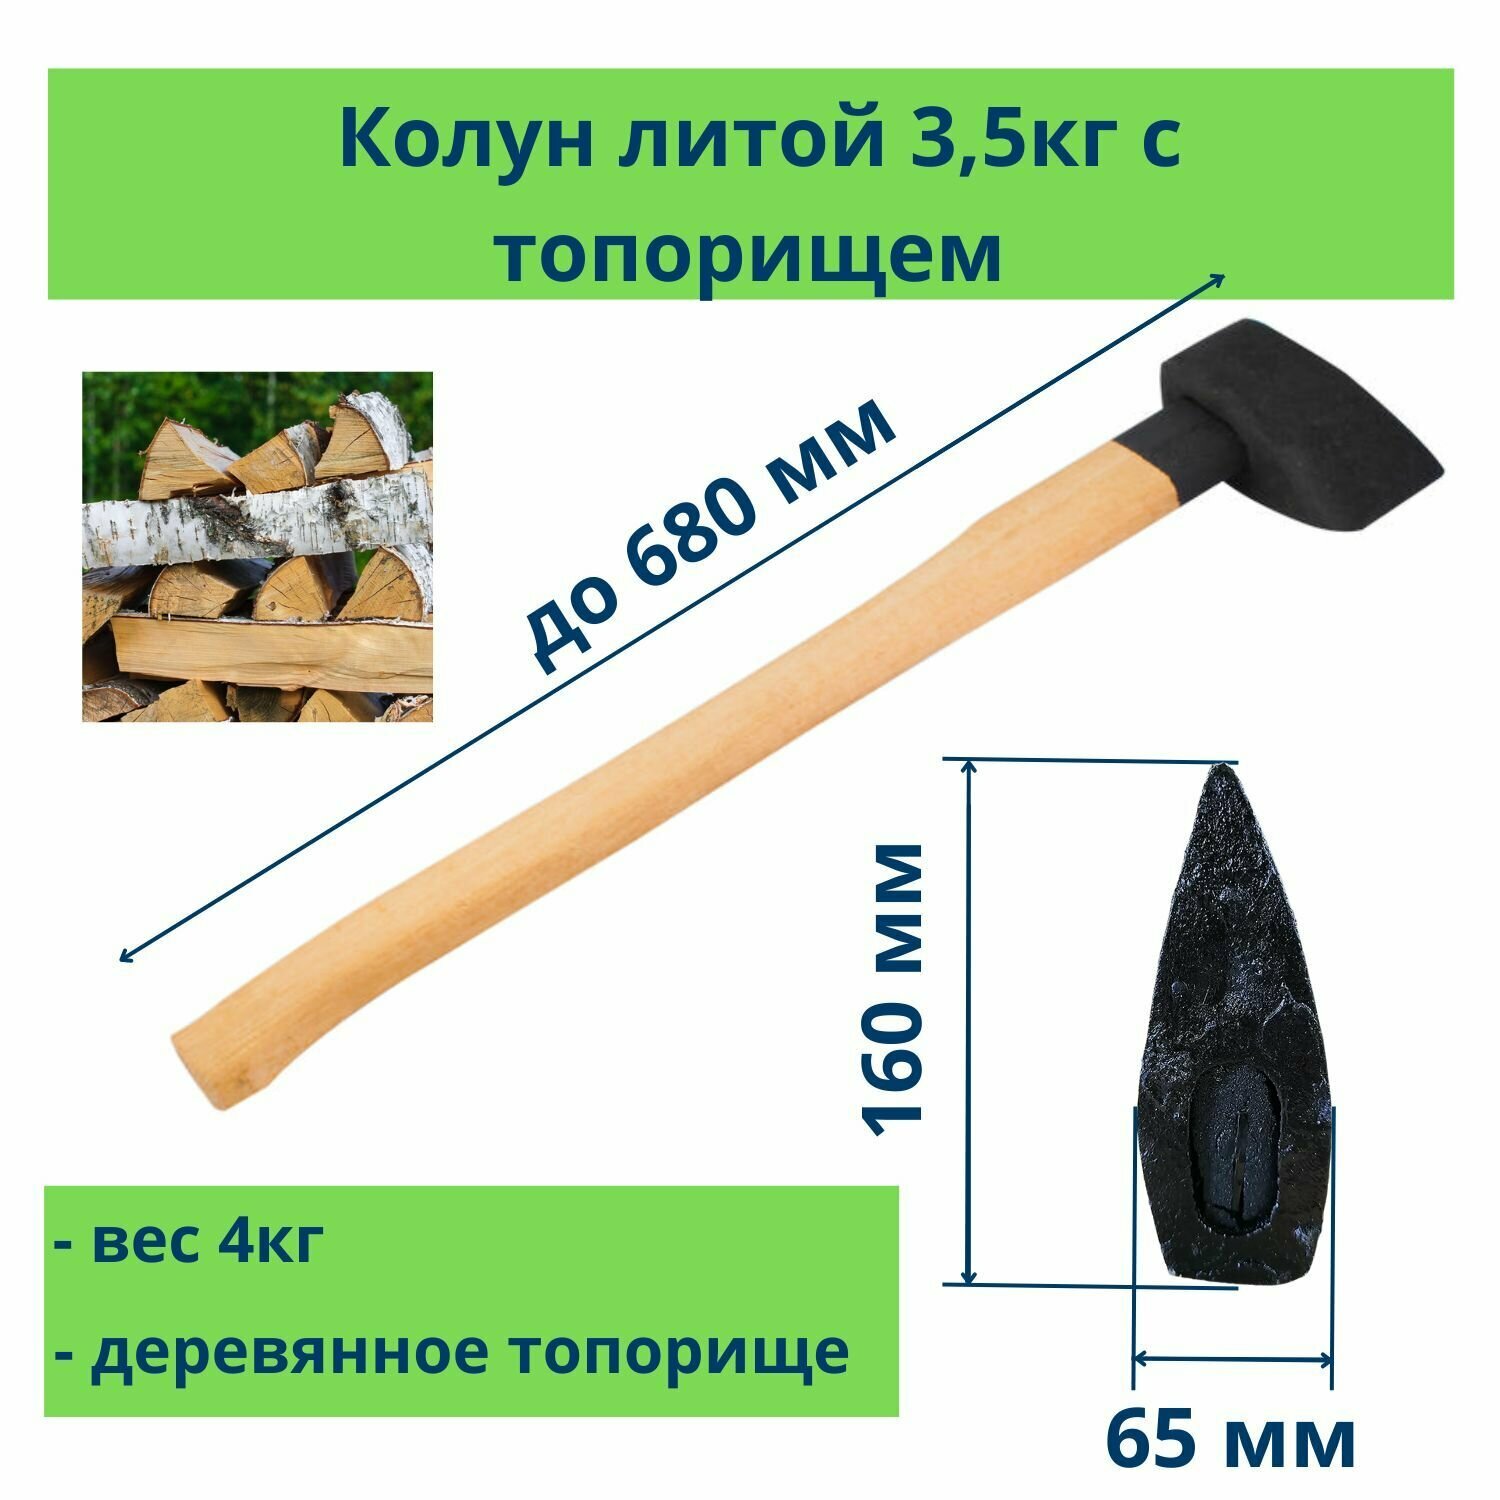 Колун литой, деревянная рукоятка, вес 3500 г, Россия